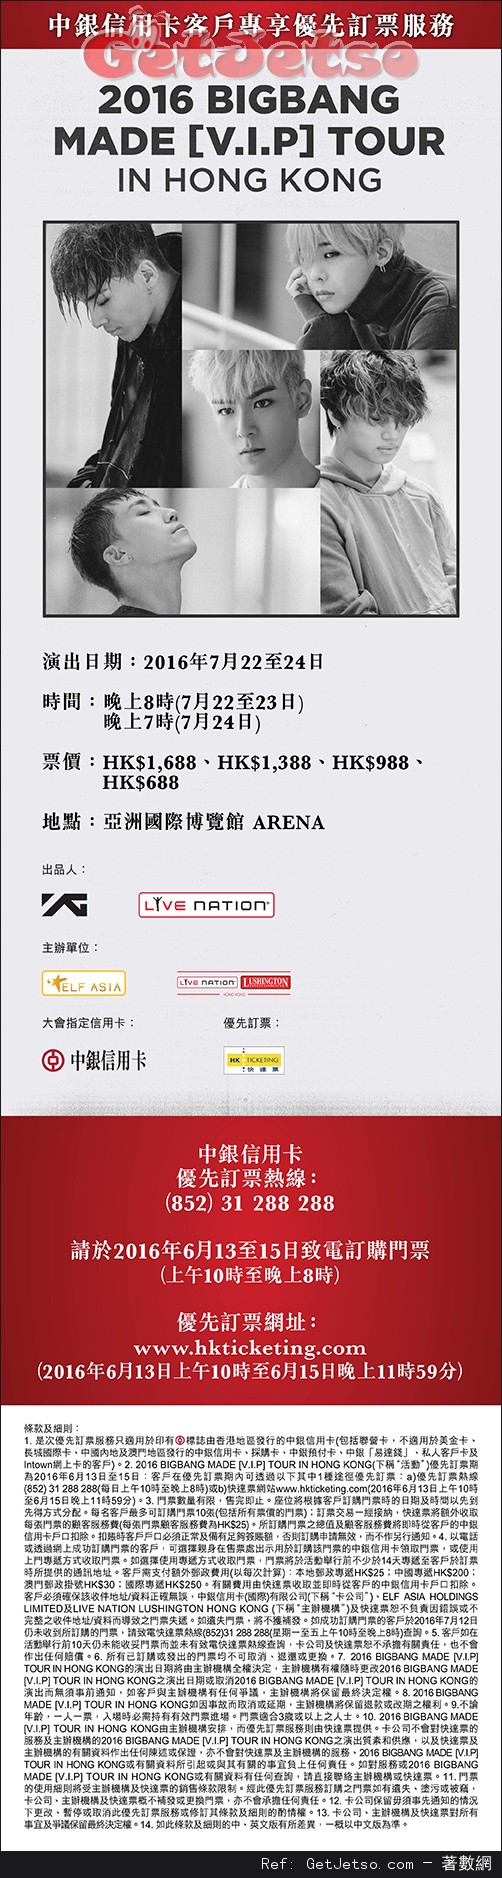 中銀信用卡享2016 BIGBANG MADE [V.I.P]TOUR IN HK優先訂票優惠(16年6月13-15日)圖片1